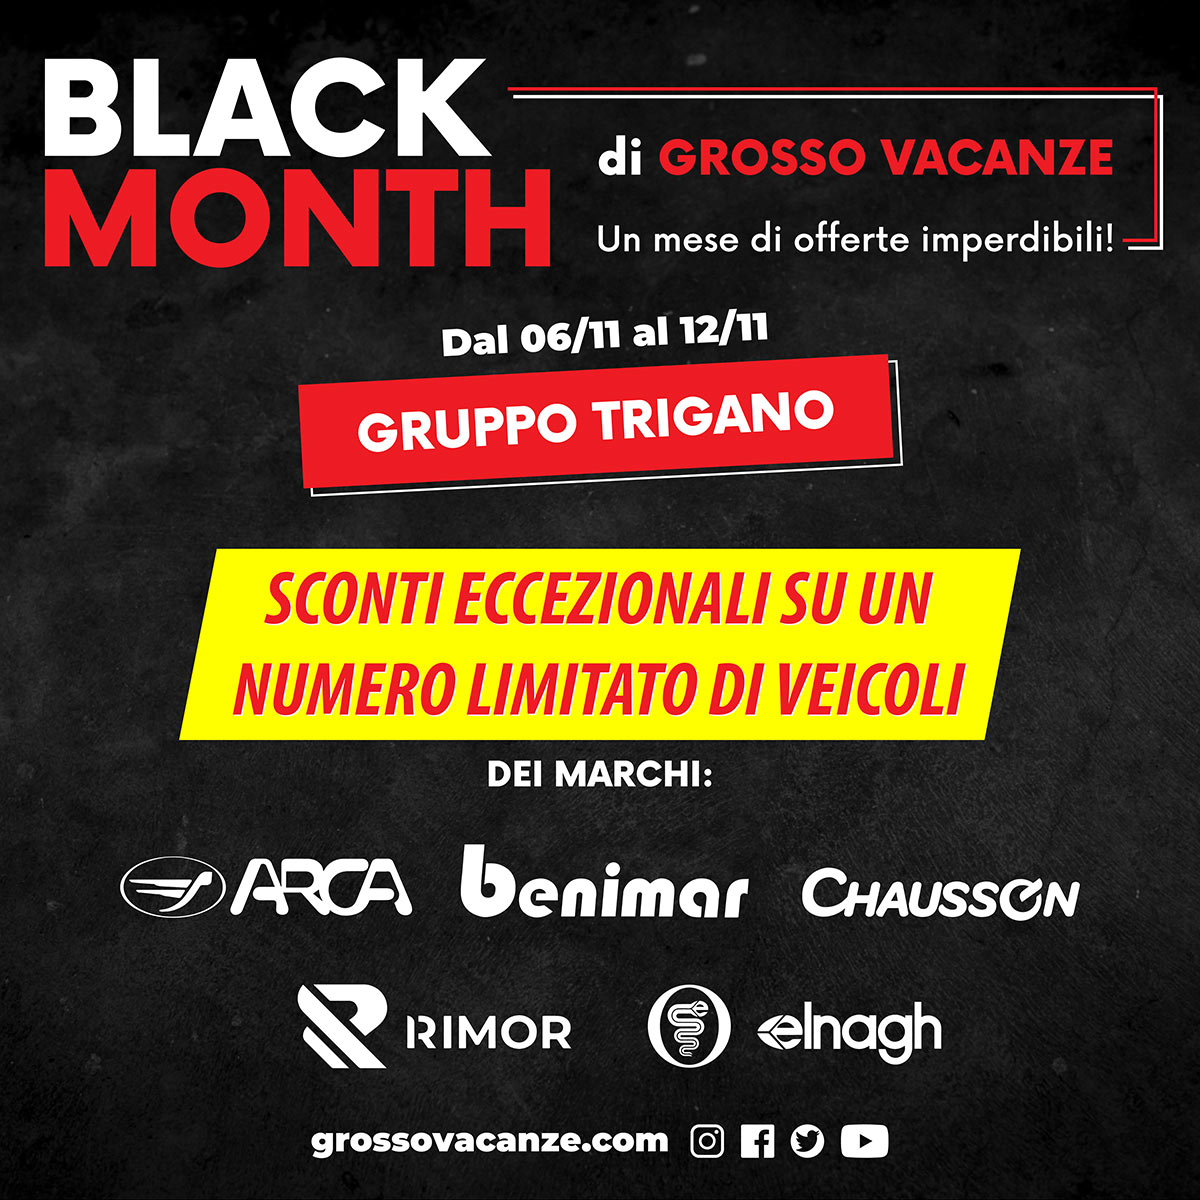 Black Month - Sconti eccezionali sui veicoli del Gruppo Trigano